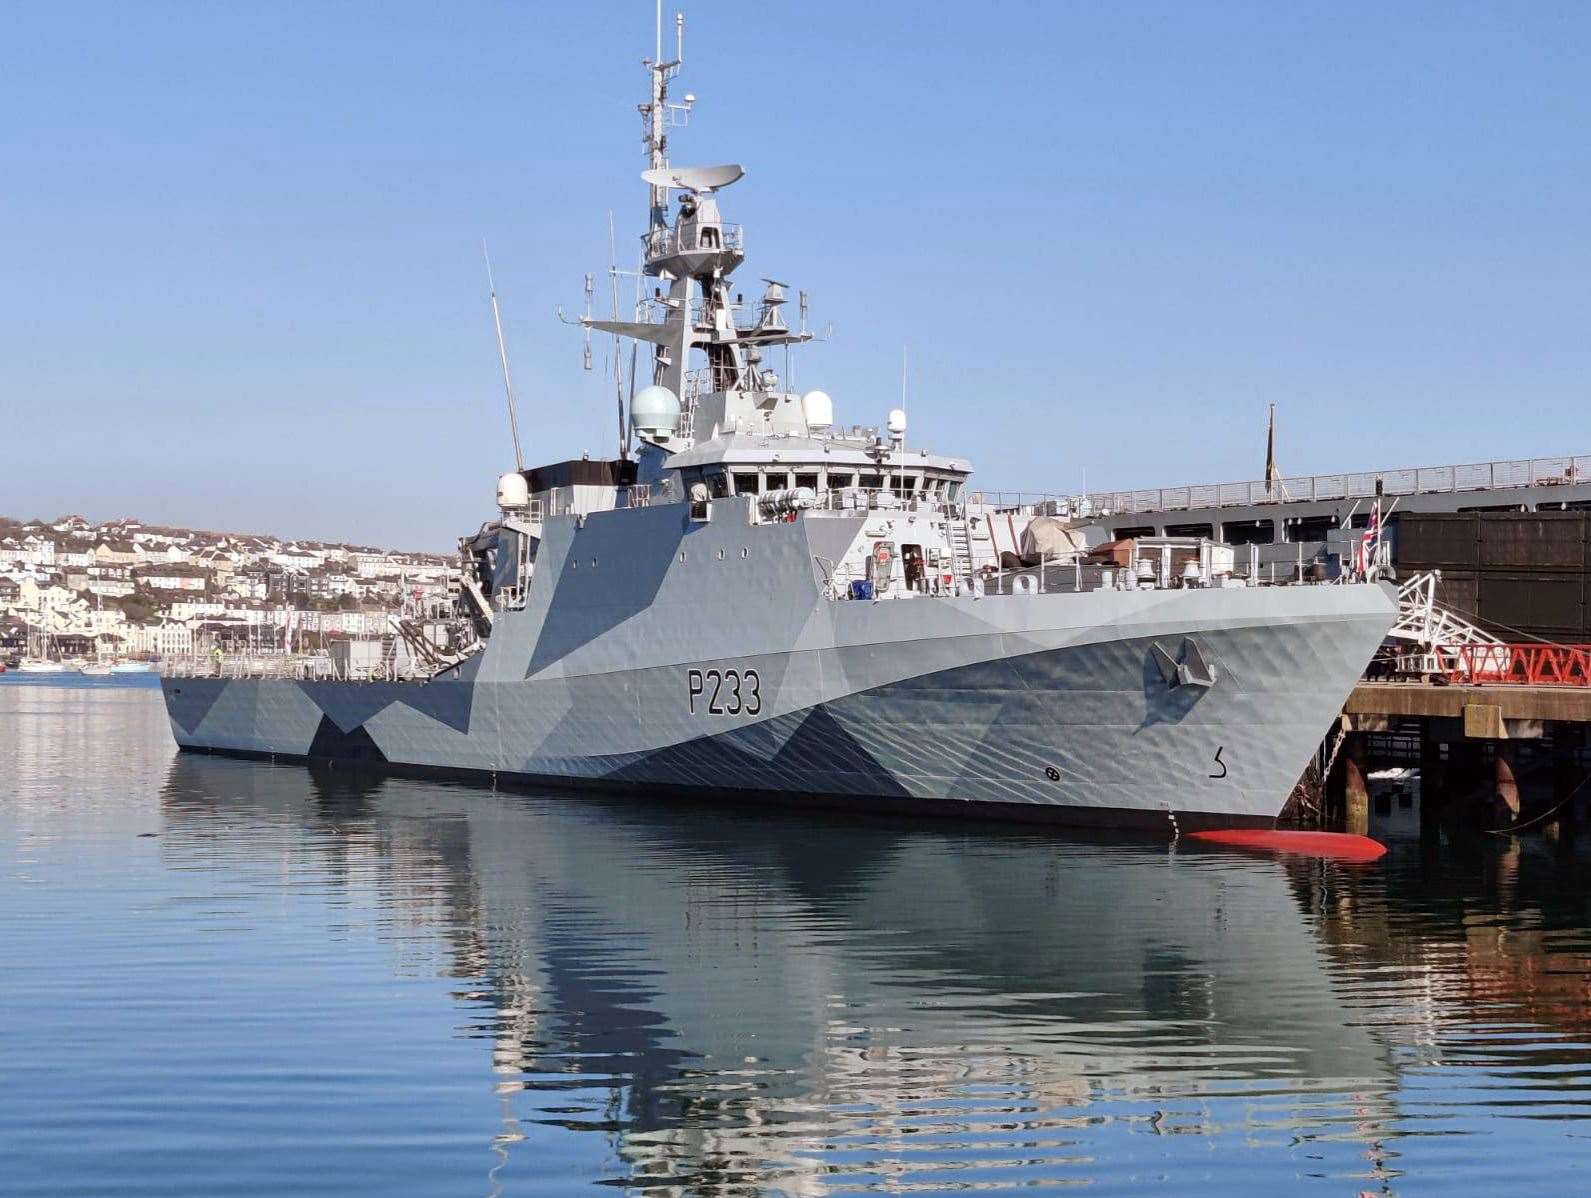 Boris Johnson has said HMS Tamar will remain as a ‘precautionary measure’ (MoD/PA)